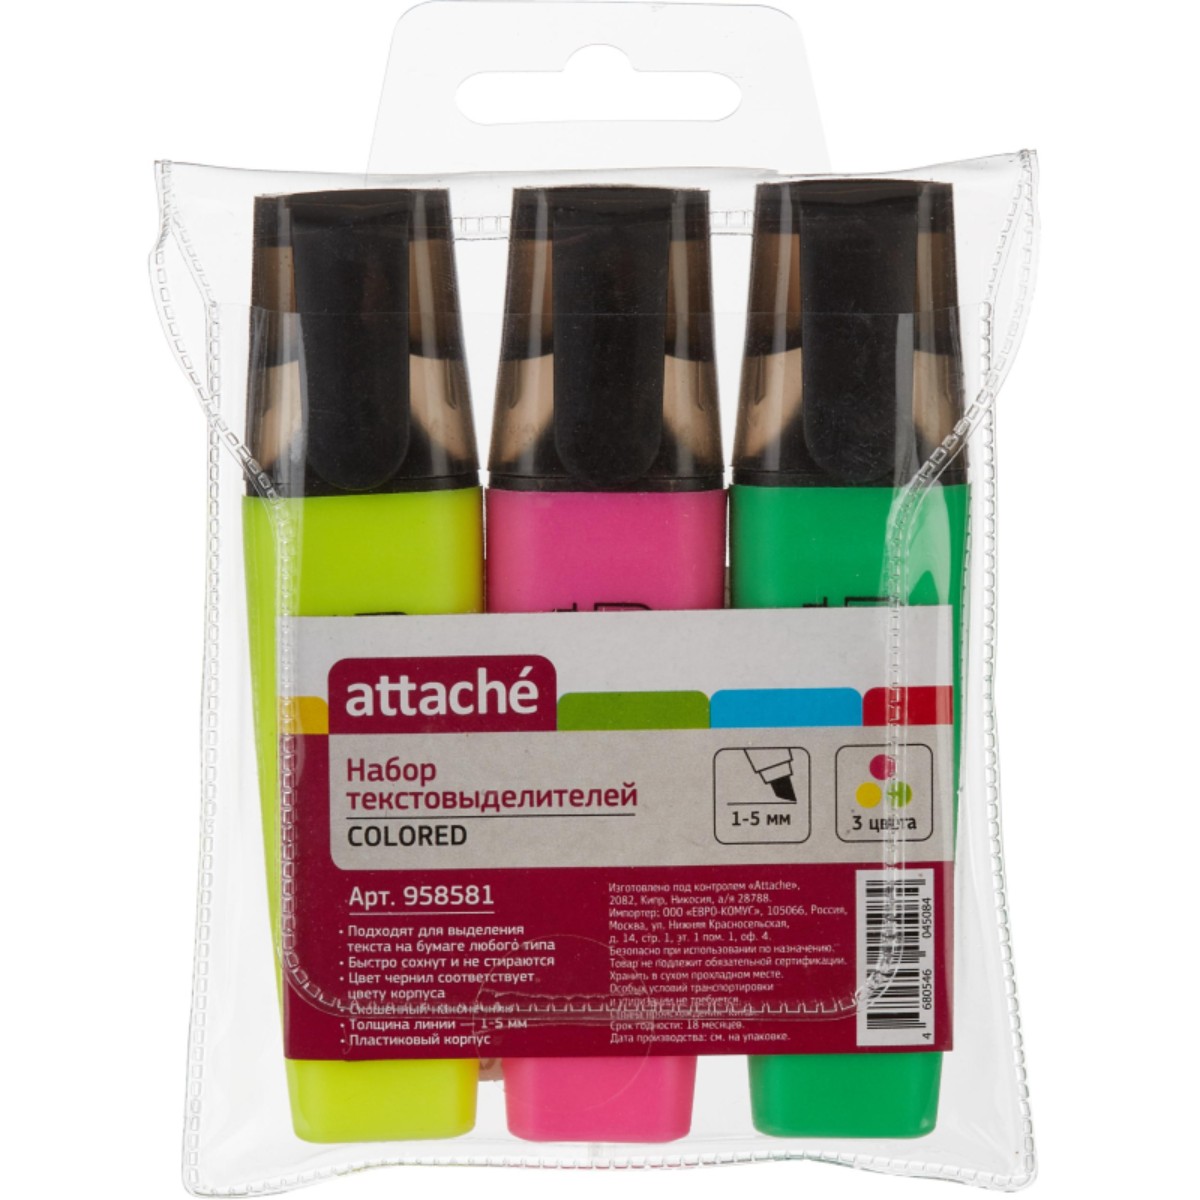 Текстовыделитель Attache Colored 1-5мм 4 упаковки по 3 шт - фото 3